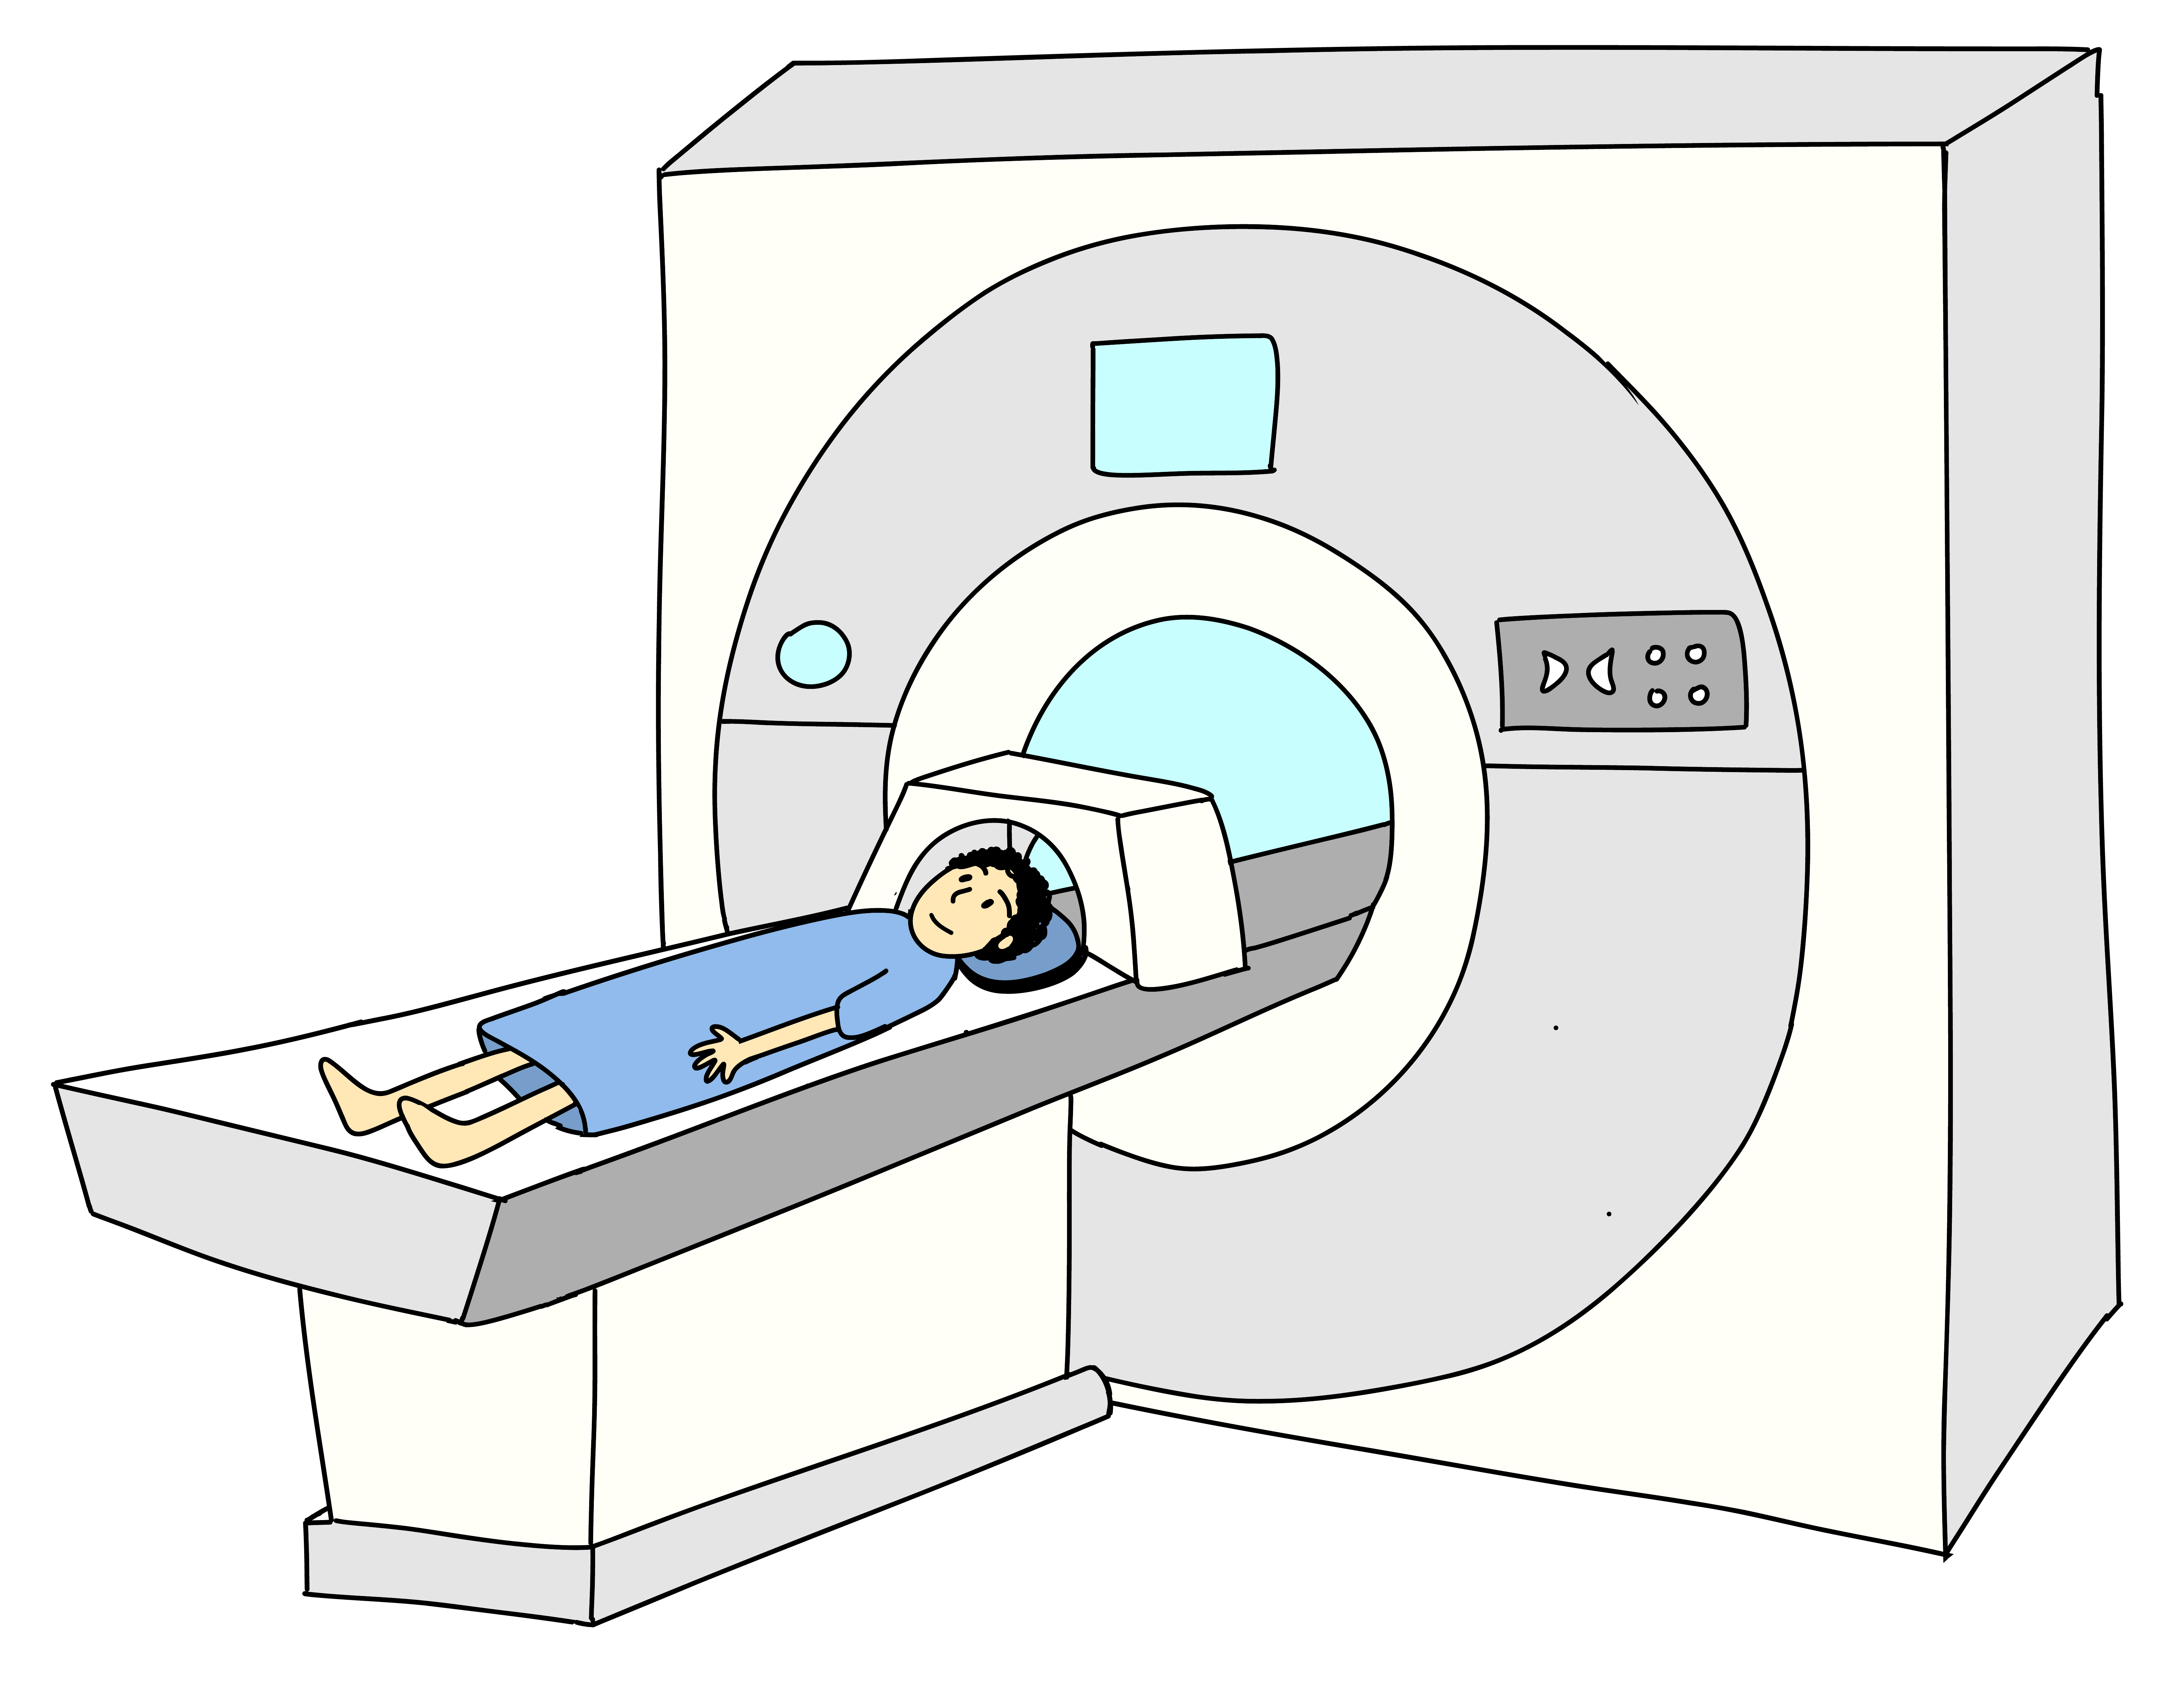 a cartoon of a person on an MRI machine